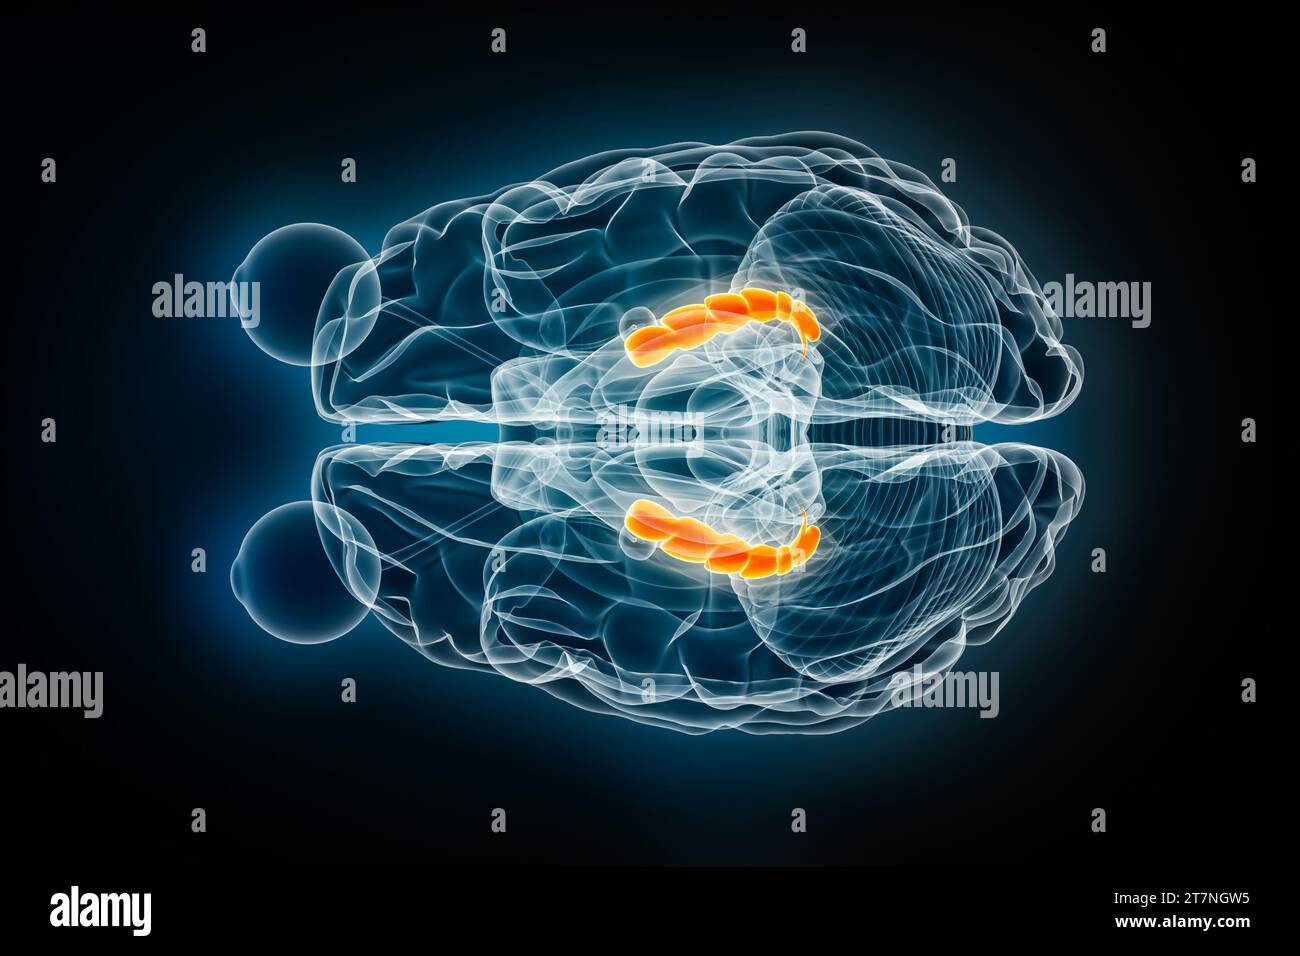 Illustrazione del rendering 3D con vista superiore a raggi X dell'ippocampo o superiore. Cervello umano, anatomia del sistema limbico e nervoso, medico, sanitario, biologia, scienc Foto Stock